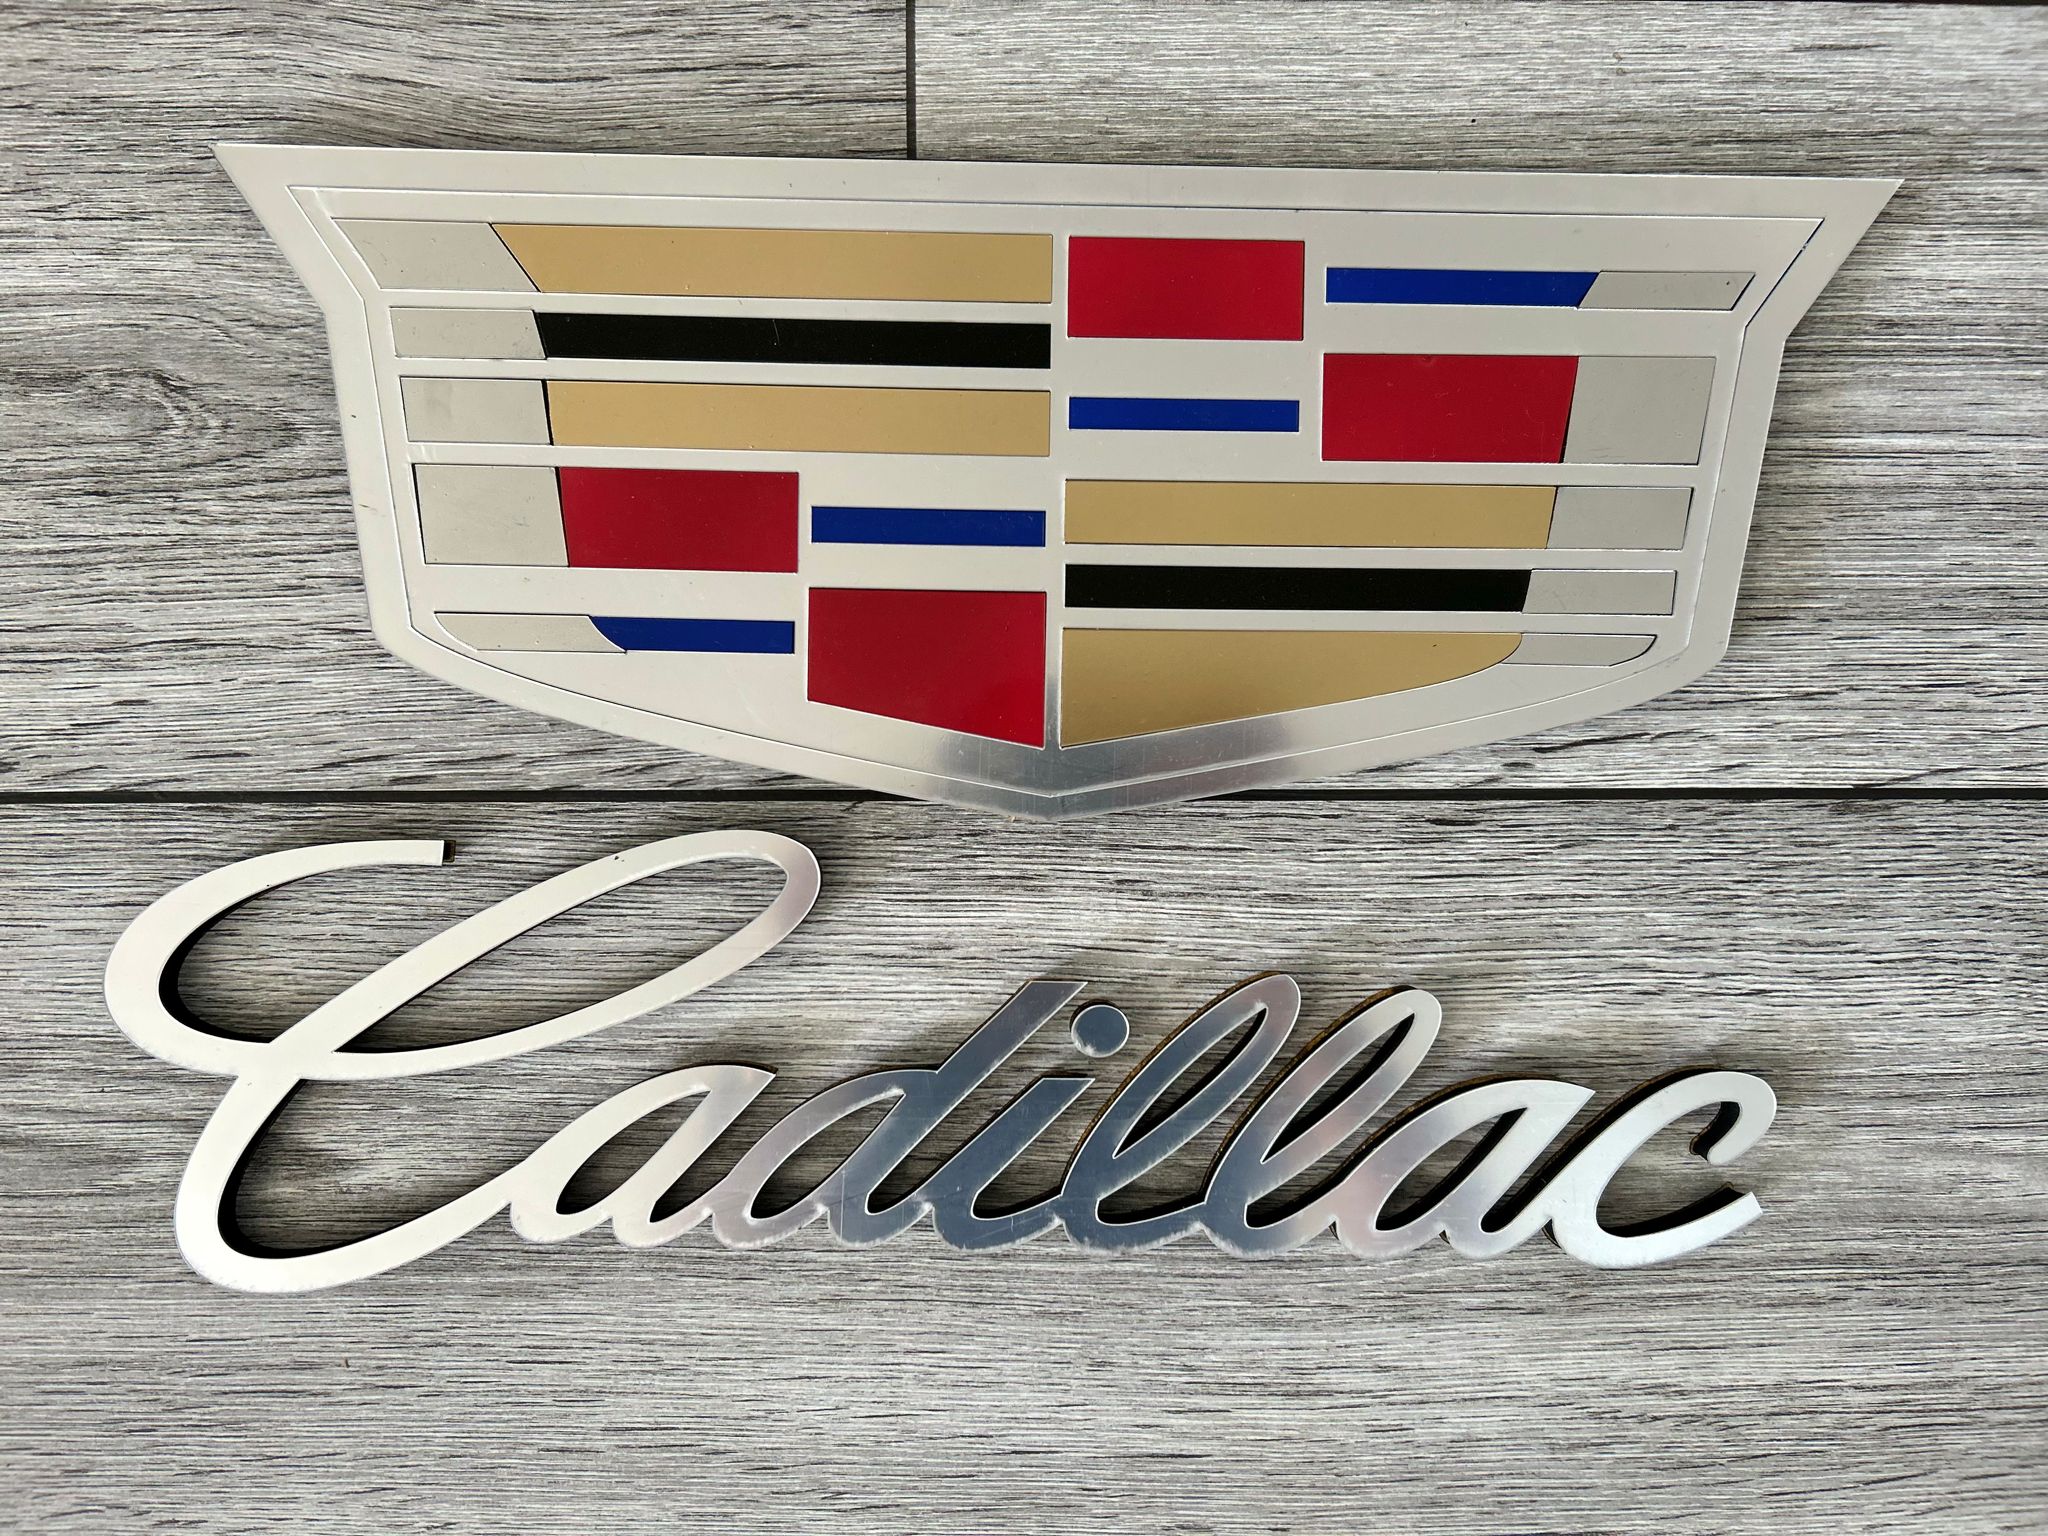 Cadillac Wall Decor Cadillac Wood Sign Cadillac Motor Vehicle Wall Plaque Cadillac Wall Art